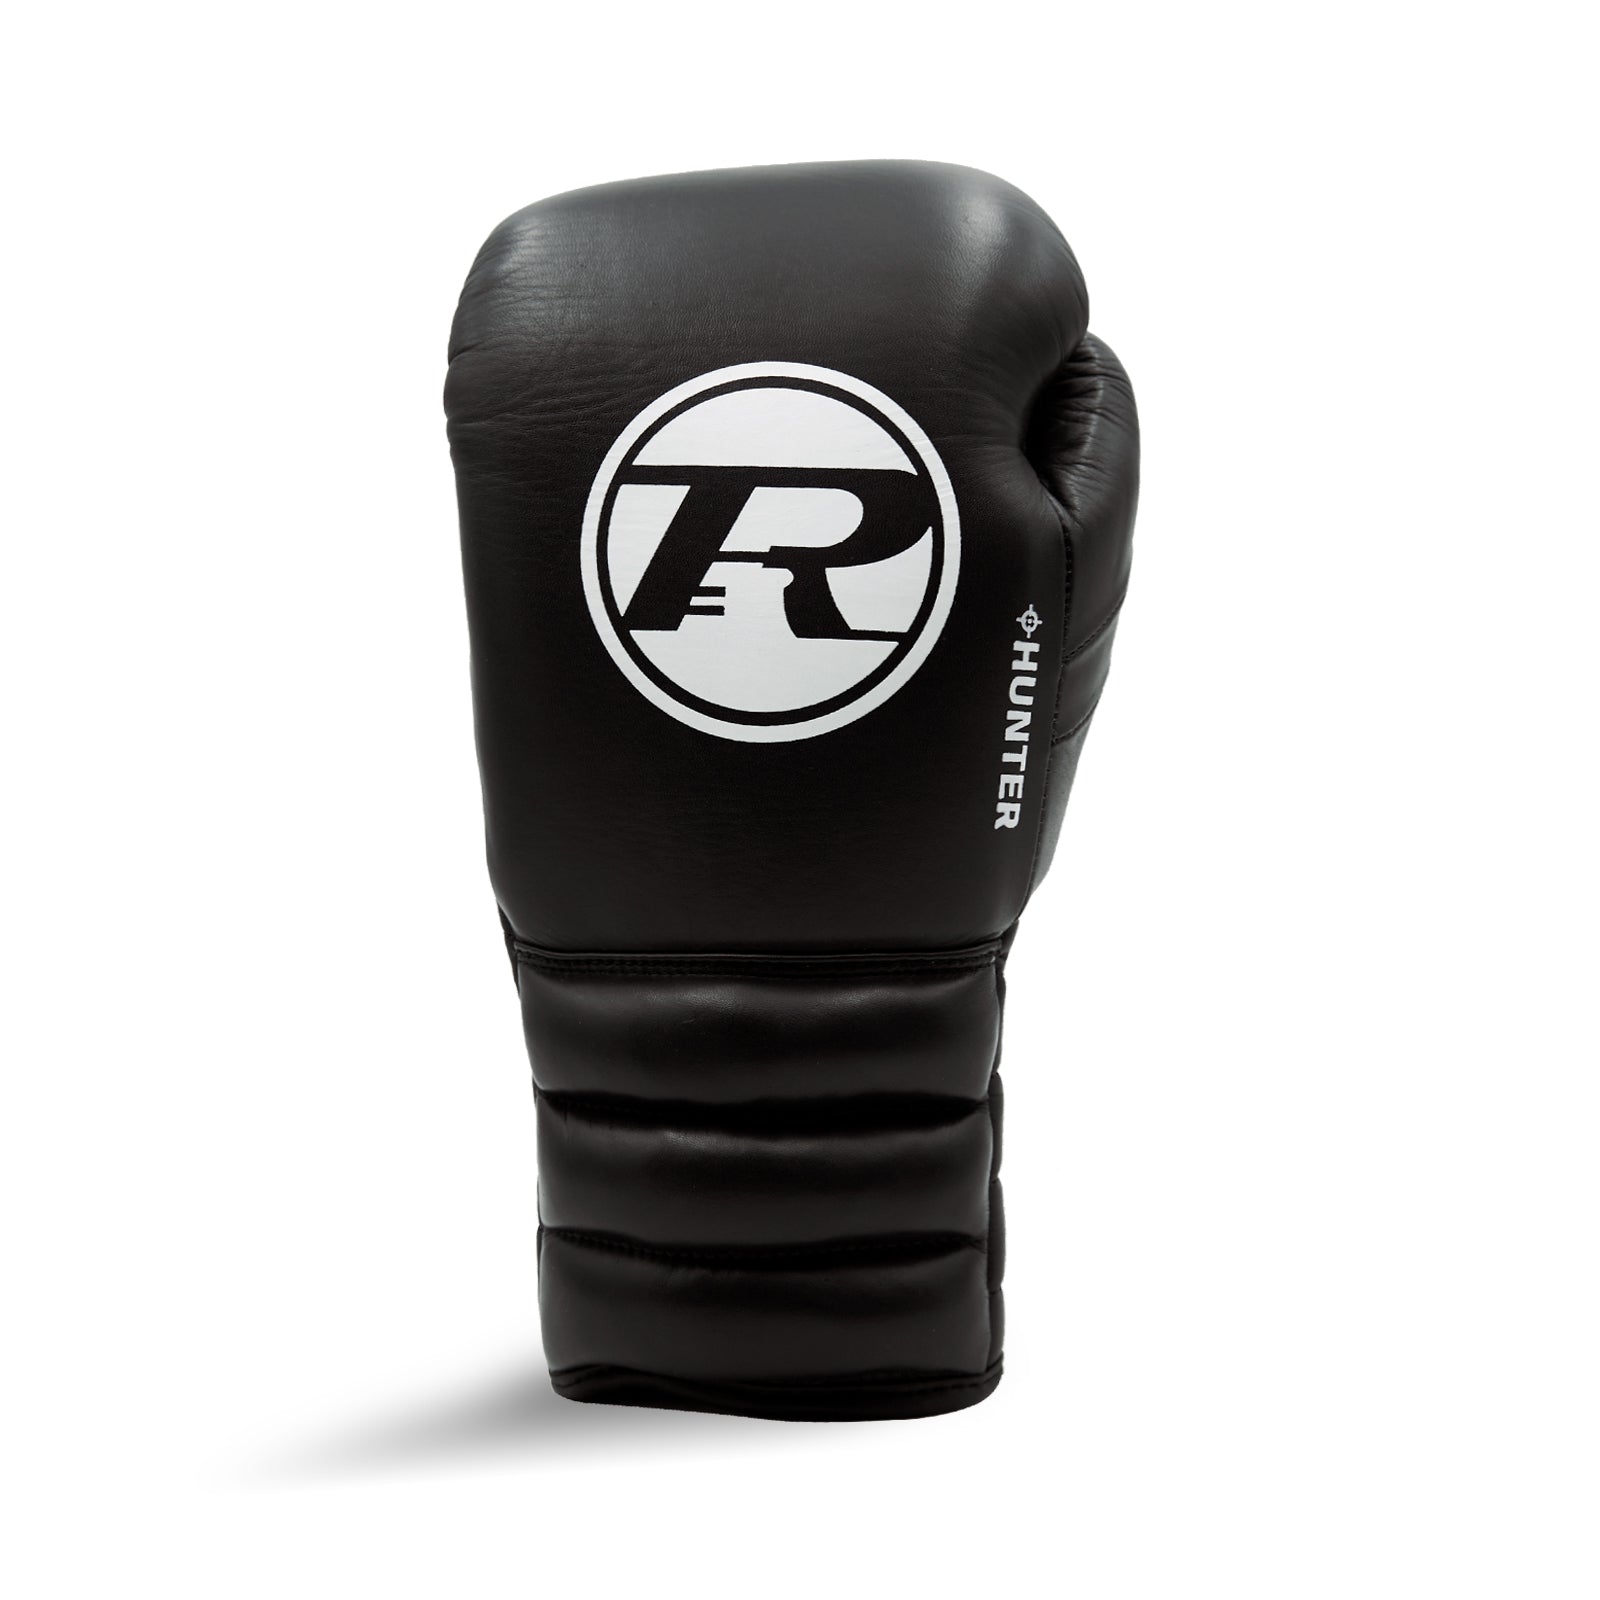 Ringside Boxing UK Hunter Series Sparring Glove Black on white background